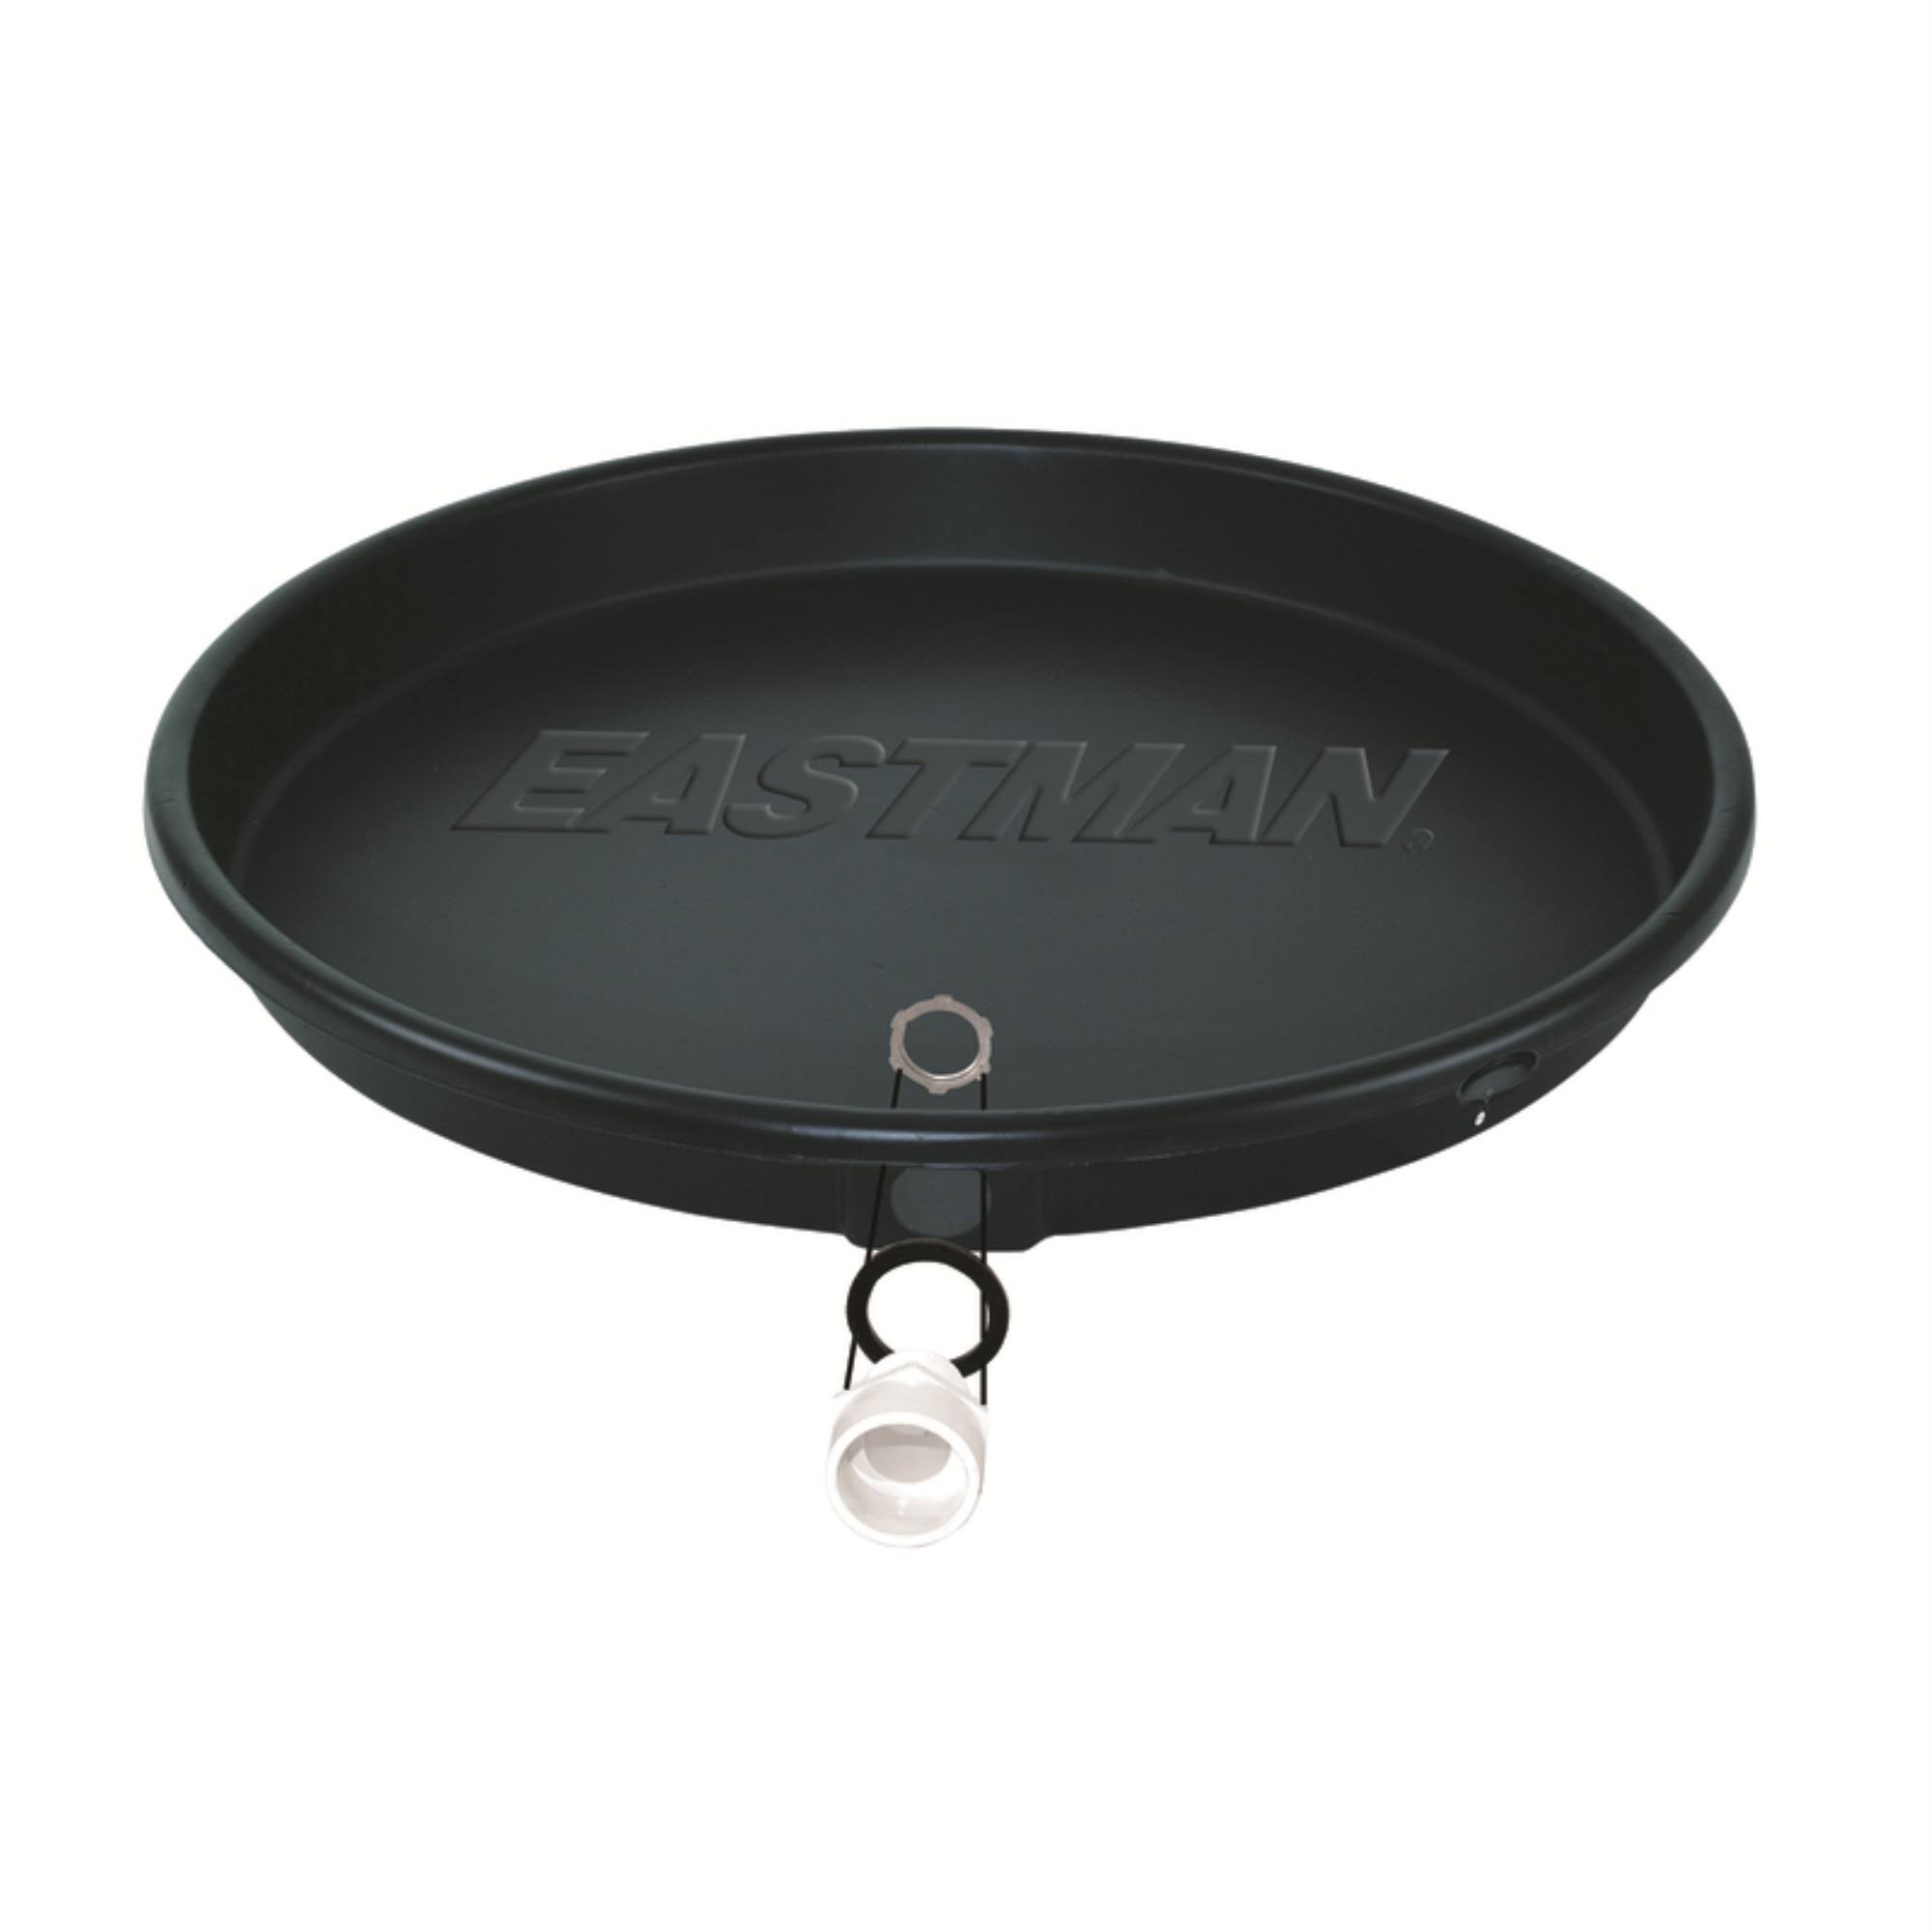 Eastman Electric Water Heater Pan - 24in, Black